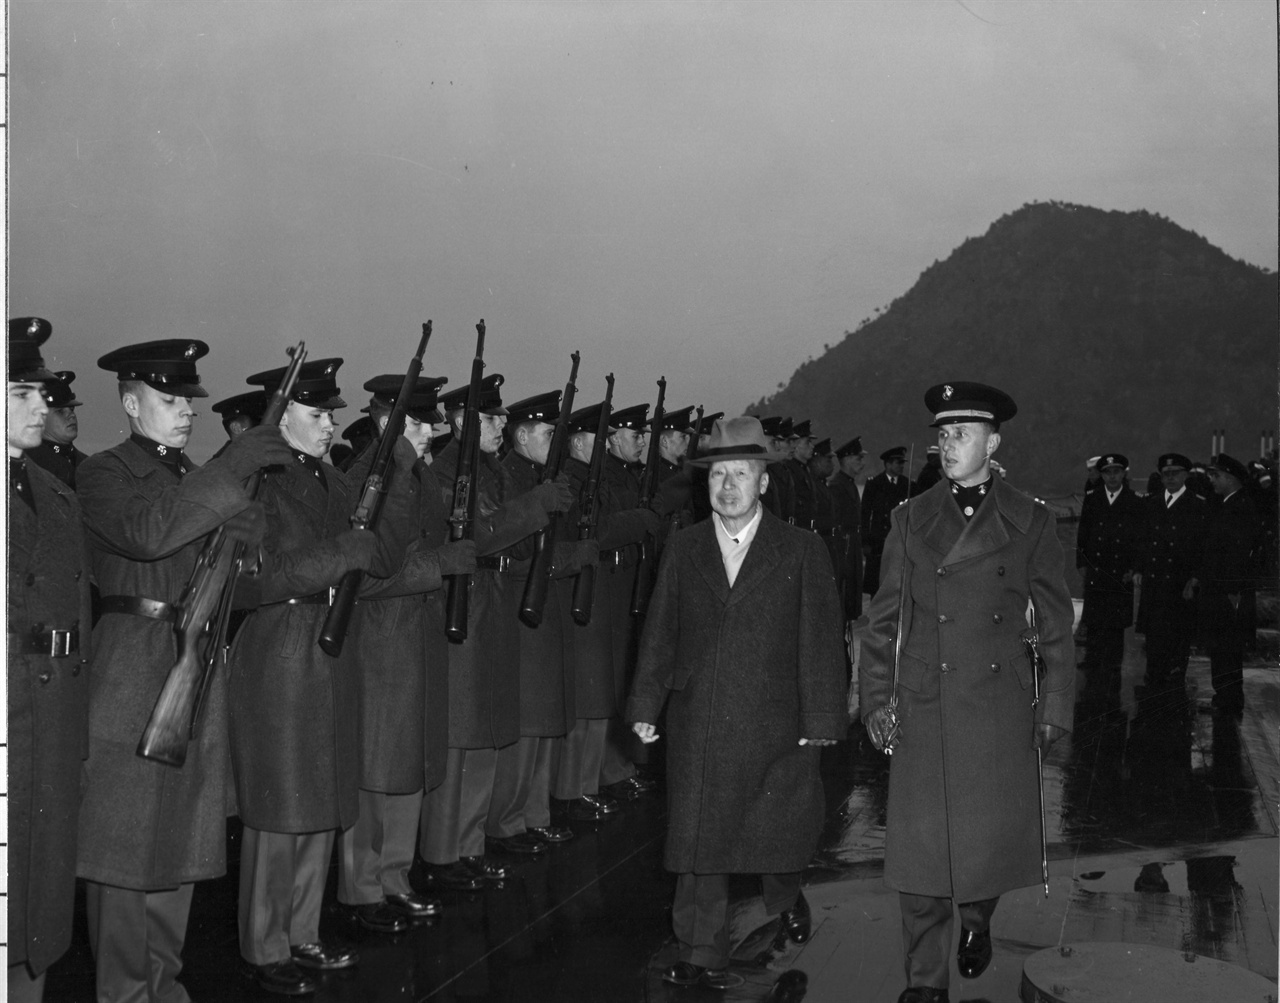  1952. 2. 12. 이승만 대통령이 부산 근해에 정박 중인 미 해군 Wisconsin 호 함상에서 미 해군 장병들을 사열하고 있다.